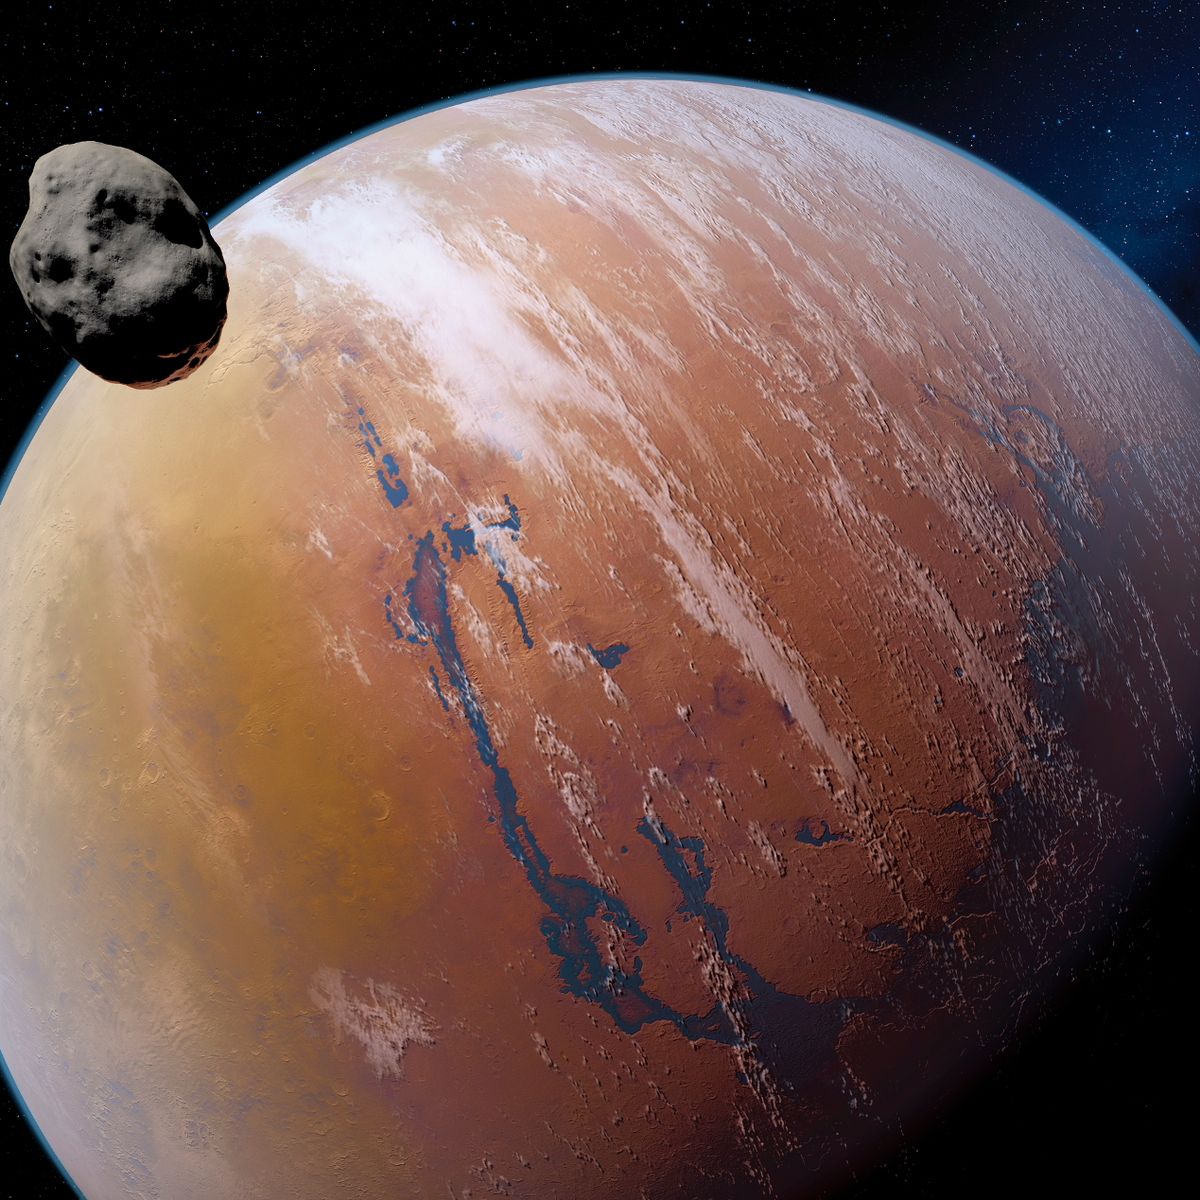 เมื่อมนุษย์อยากย้ายไปอยู่ดาวอังคาร - นี่คือสิ่งที่คุณต้องเผชิญ พร้อมวิธีแก้ไขให้คุณอยู่รอดบนดาวสีแดง